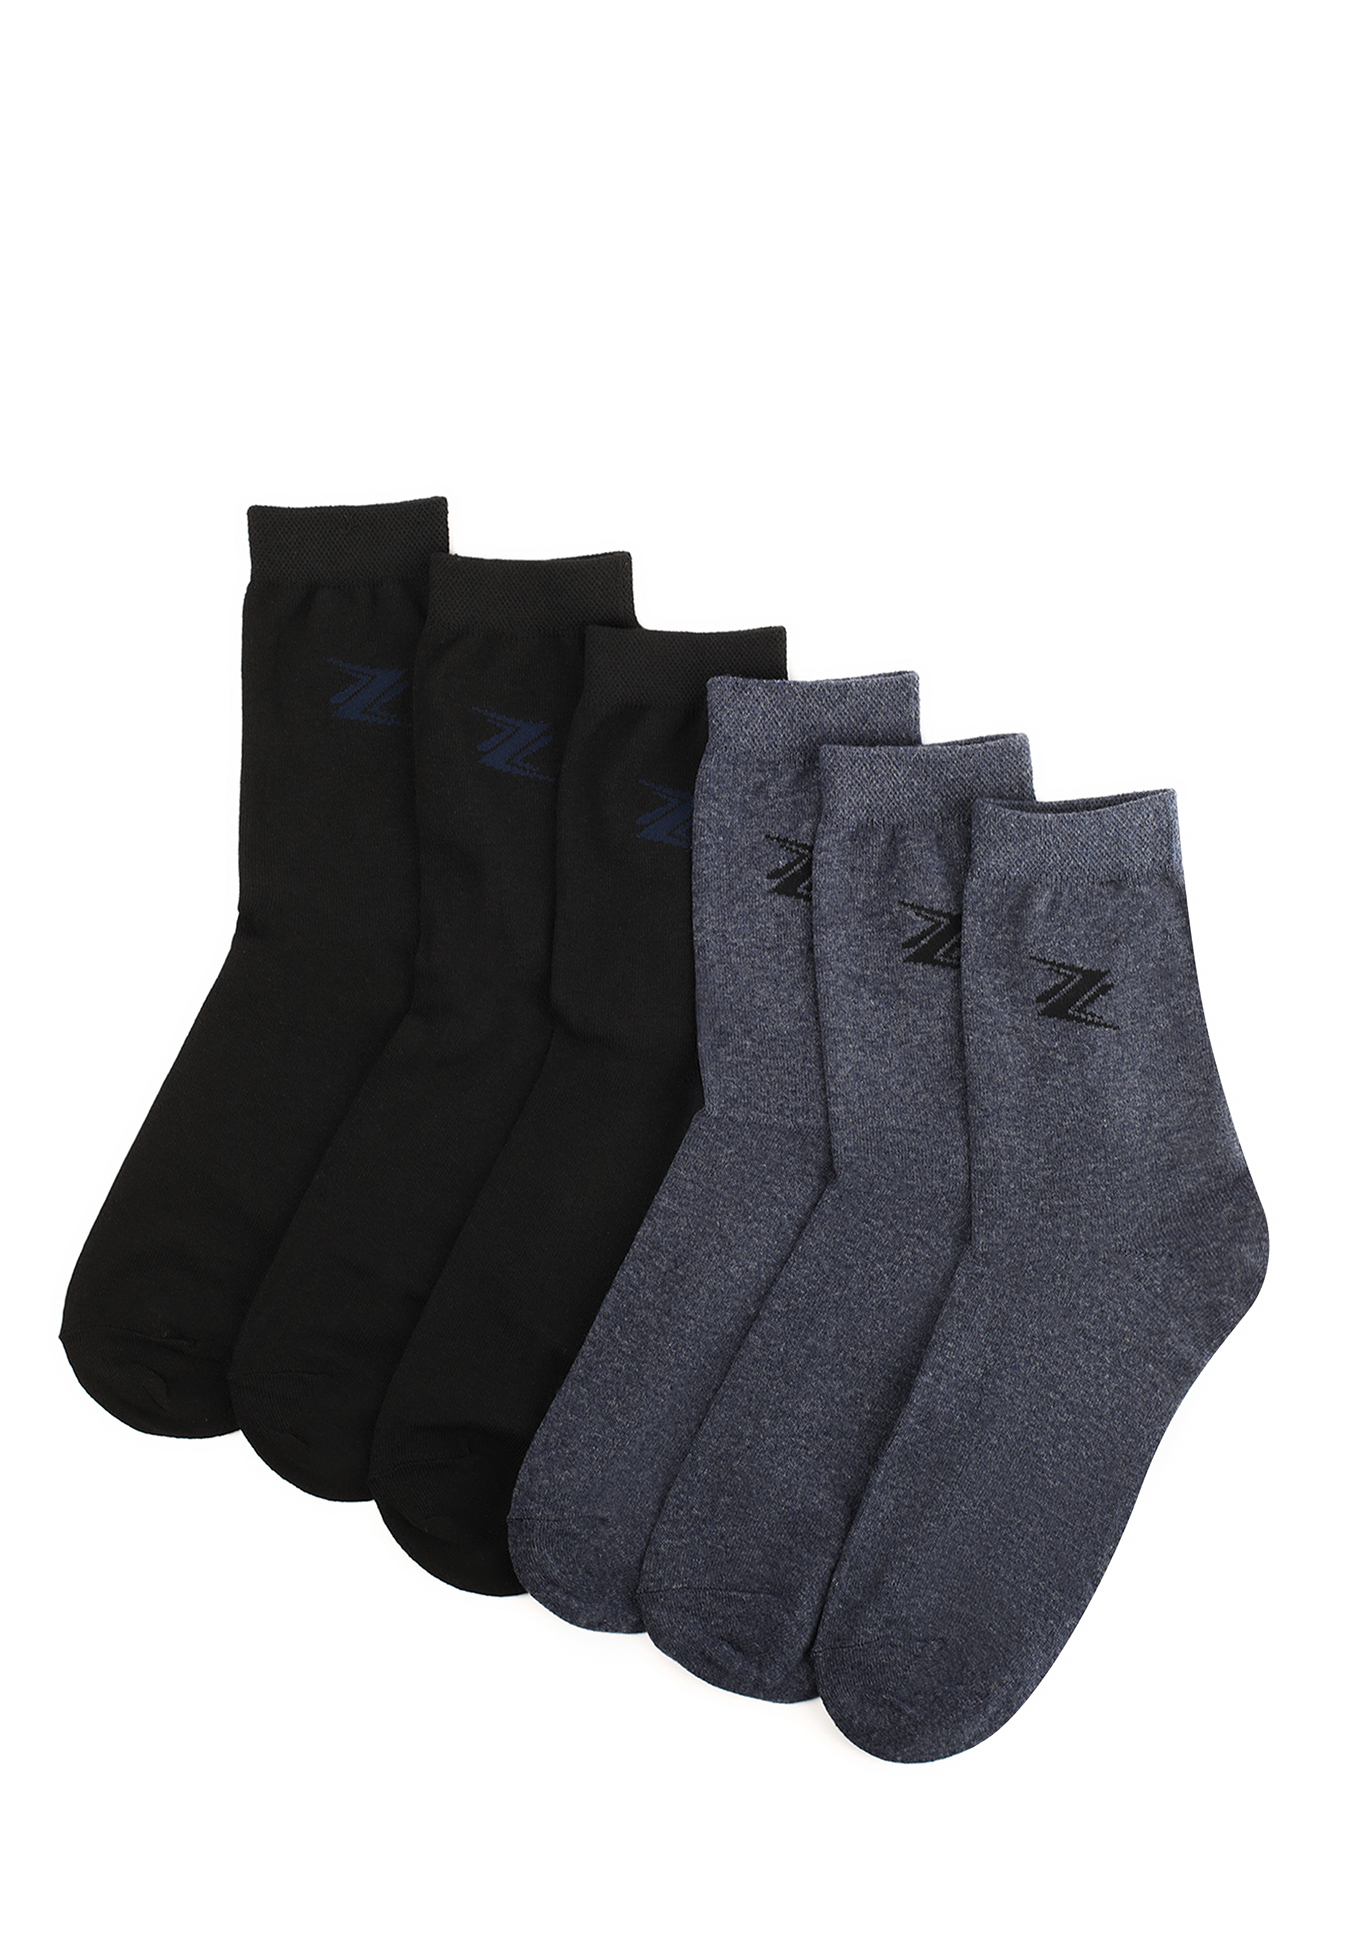 Комплект мужских носков с рисунком, 6 пар, цвет в ассортименте, размер 27